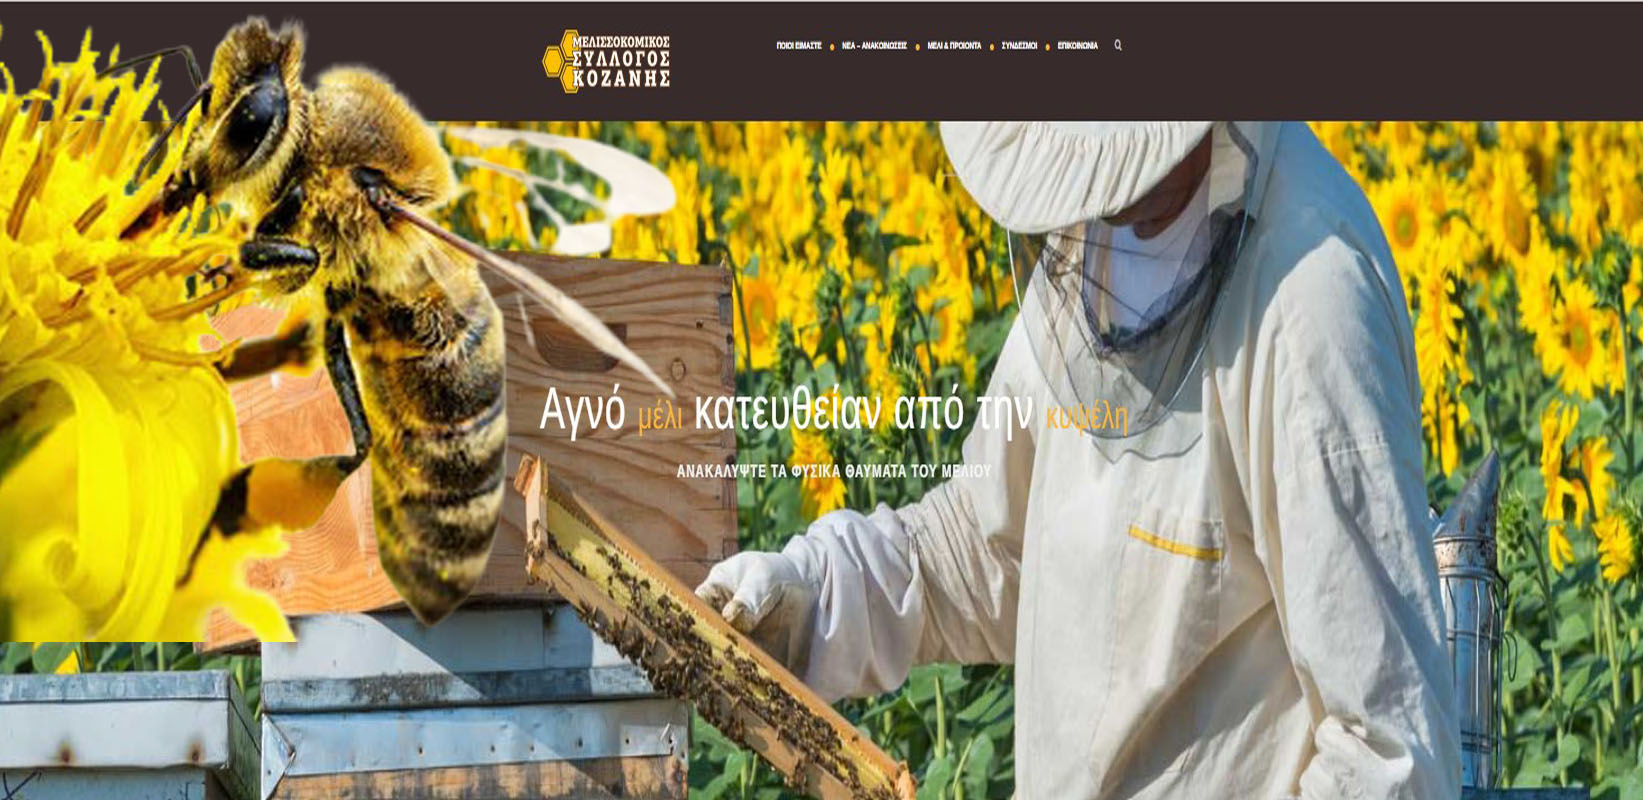 Μελισσοκομικός Σύλλογος ΠΕ Κοζάνης – Κέντρο Μελισσοκομίας Δυτικής Μακεδονίας  Δελτίο τύπου - Οδηγίες προς Αγρότες και Μελισσοκόμους   